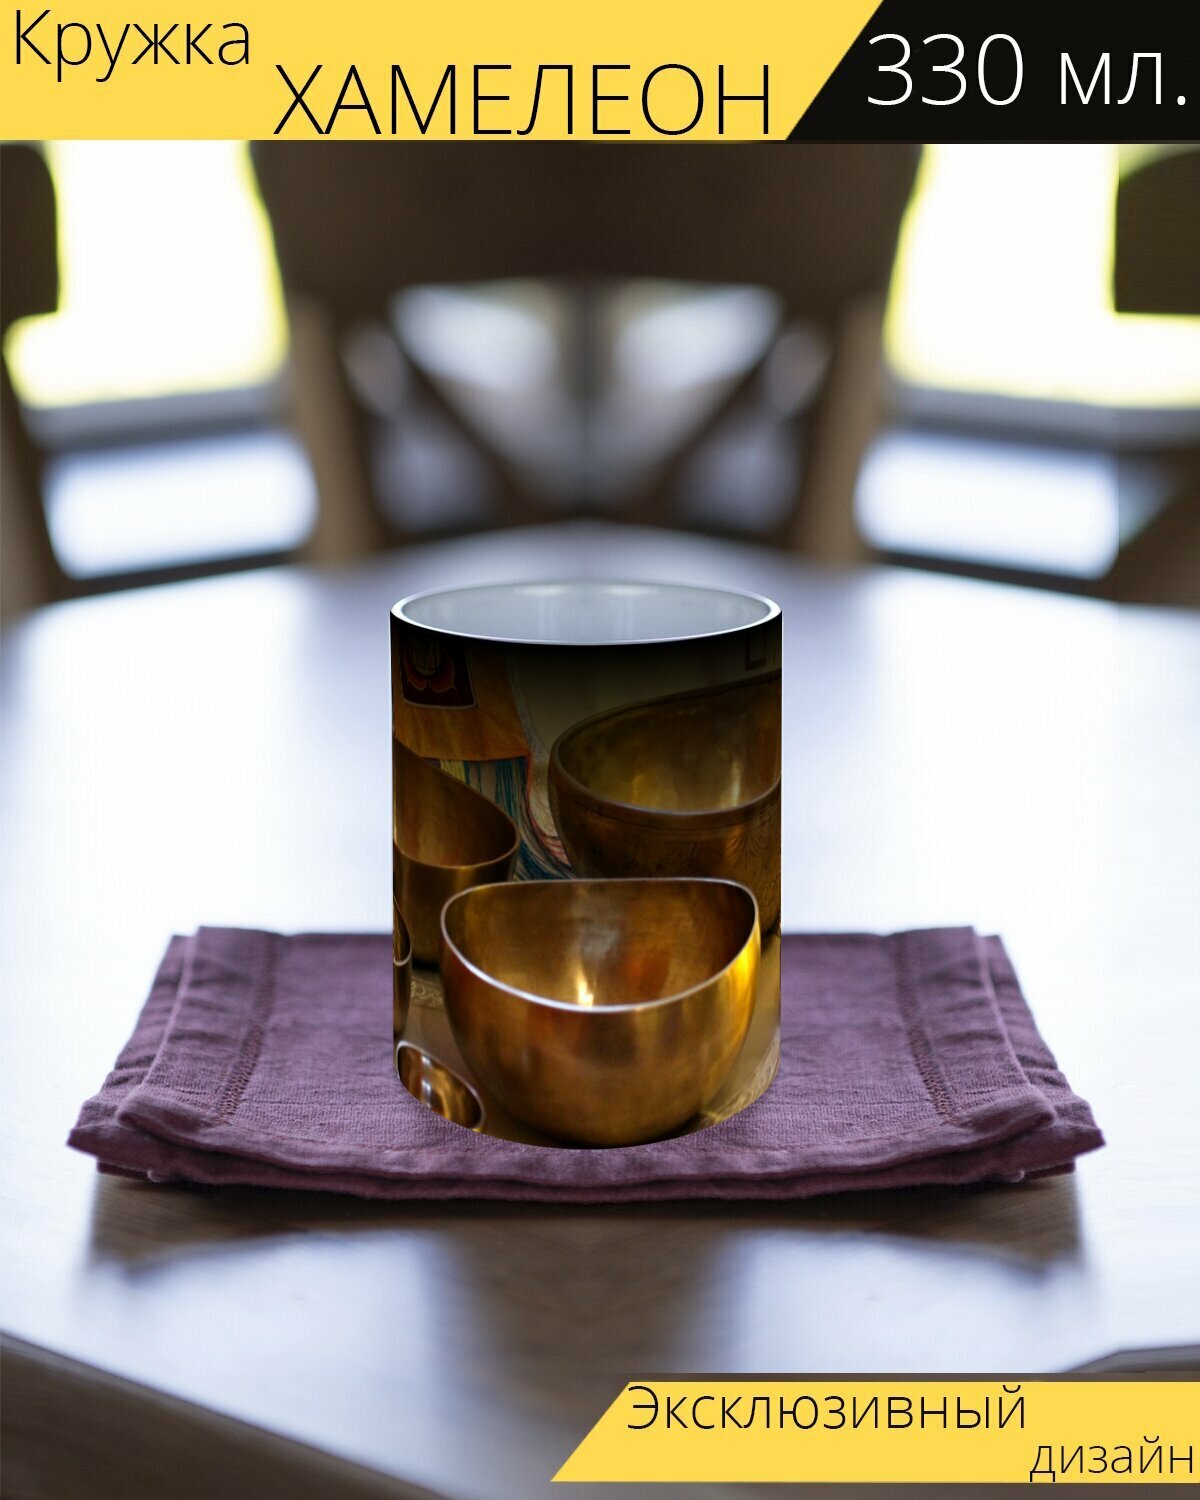 Кружка хамелеон с принтом "Поющие чаши, поющие чаши массаж, массаж" 330 мл.